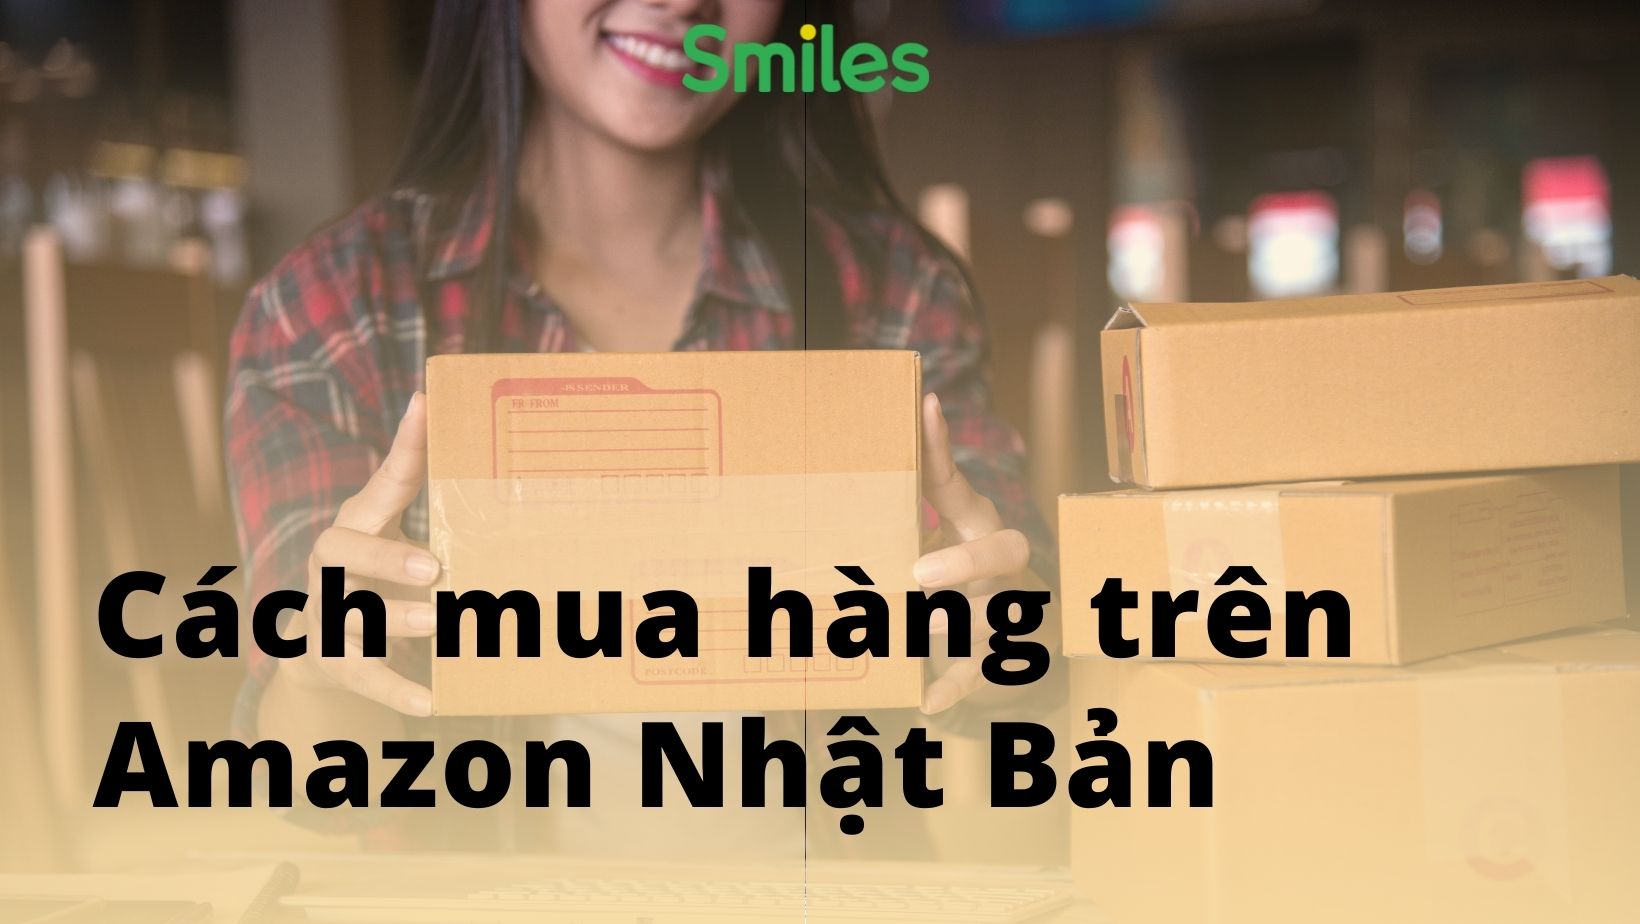 Cách mua hàng trên Amazon Nhật Bản bằng tiếng Việt